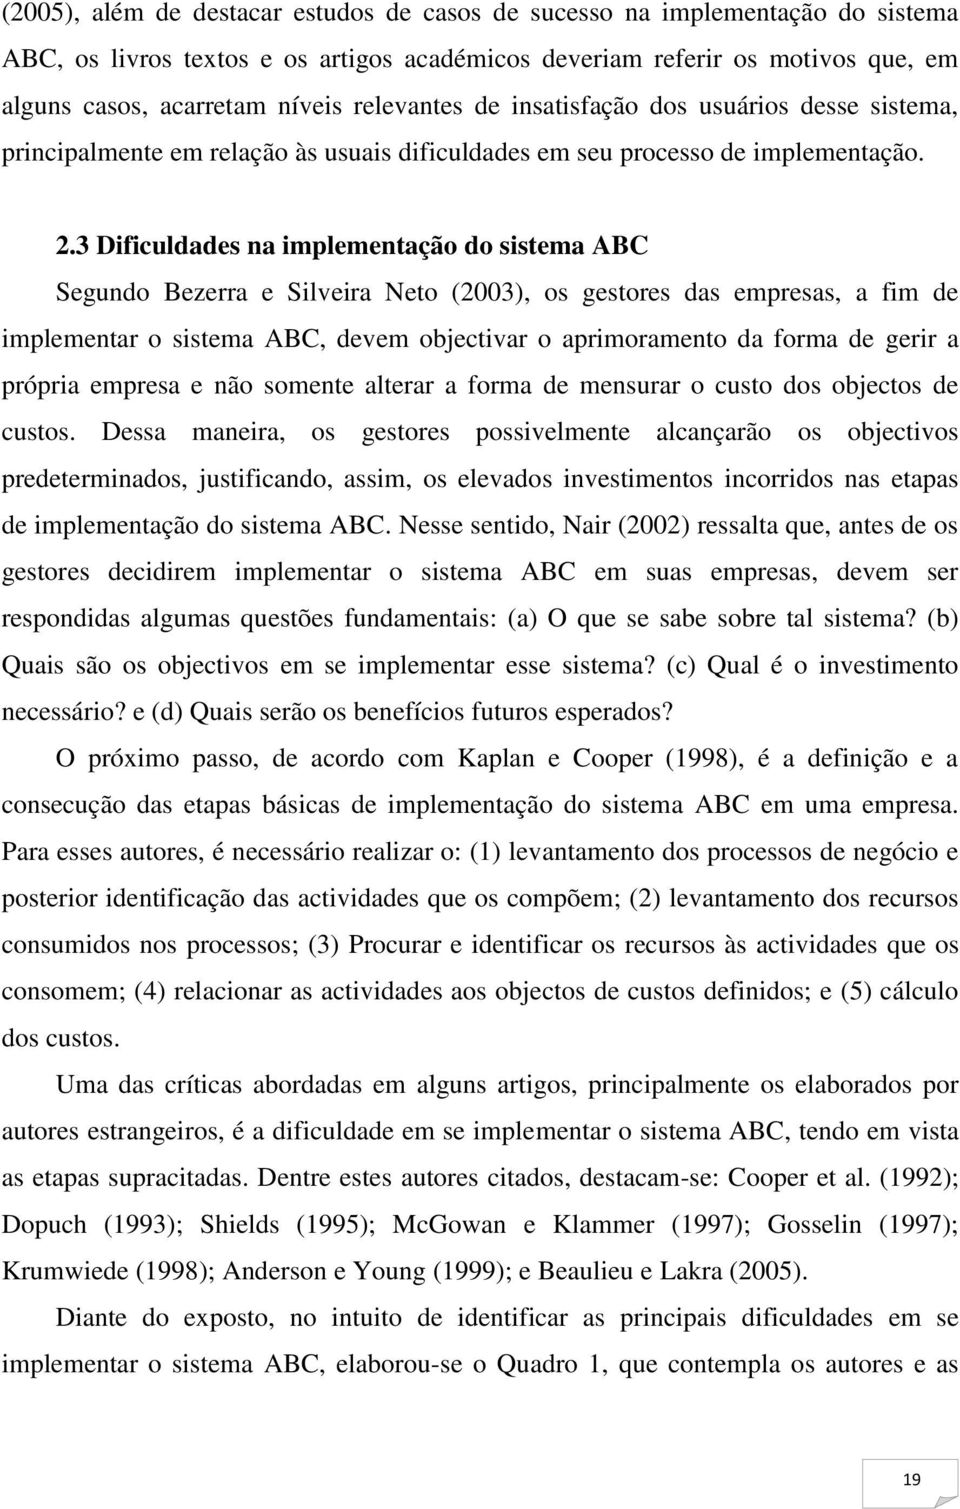 3 Dificuldades na implementação do sistema ABC Segundo Bezerra e Silveira Neto (2003), os gestores das empresas, a fim de implementar o sistema ABC, devem objectivar o aprimoramento da forma de gerir